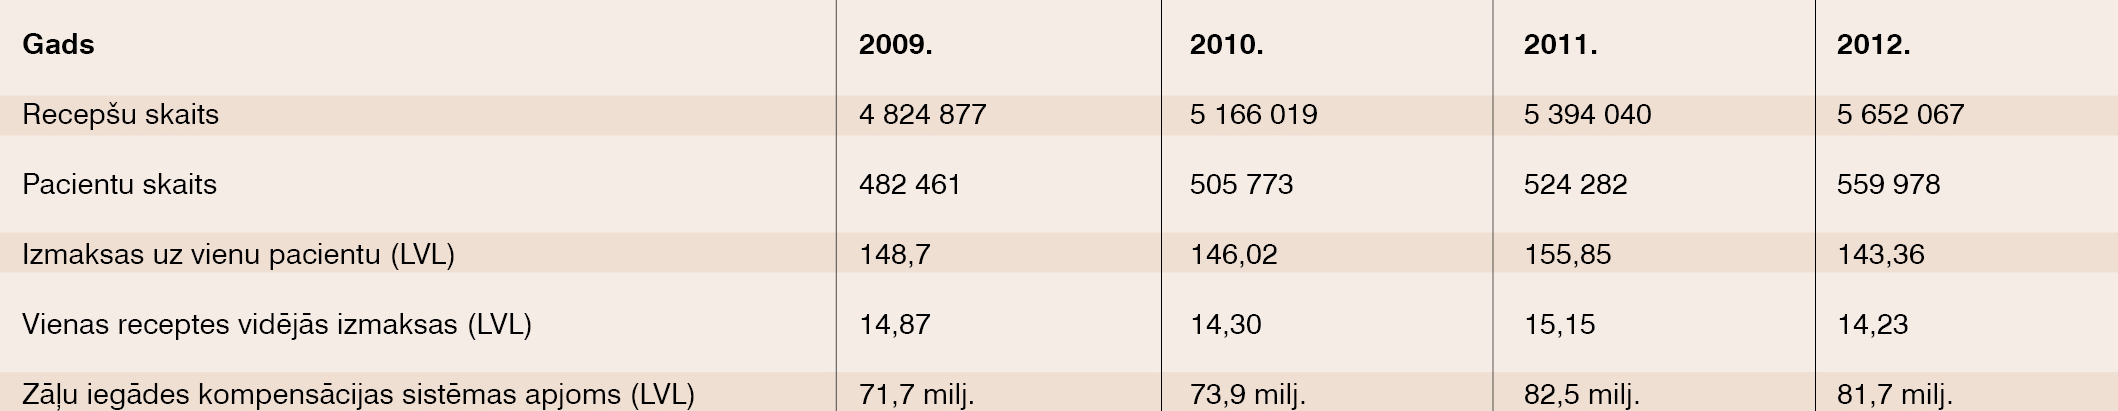 Kompensējamo medikamentu izmaksas 2009.–2012. gadā